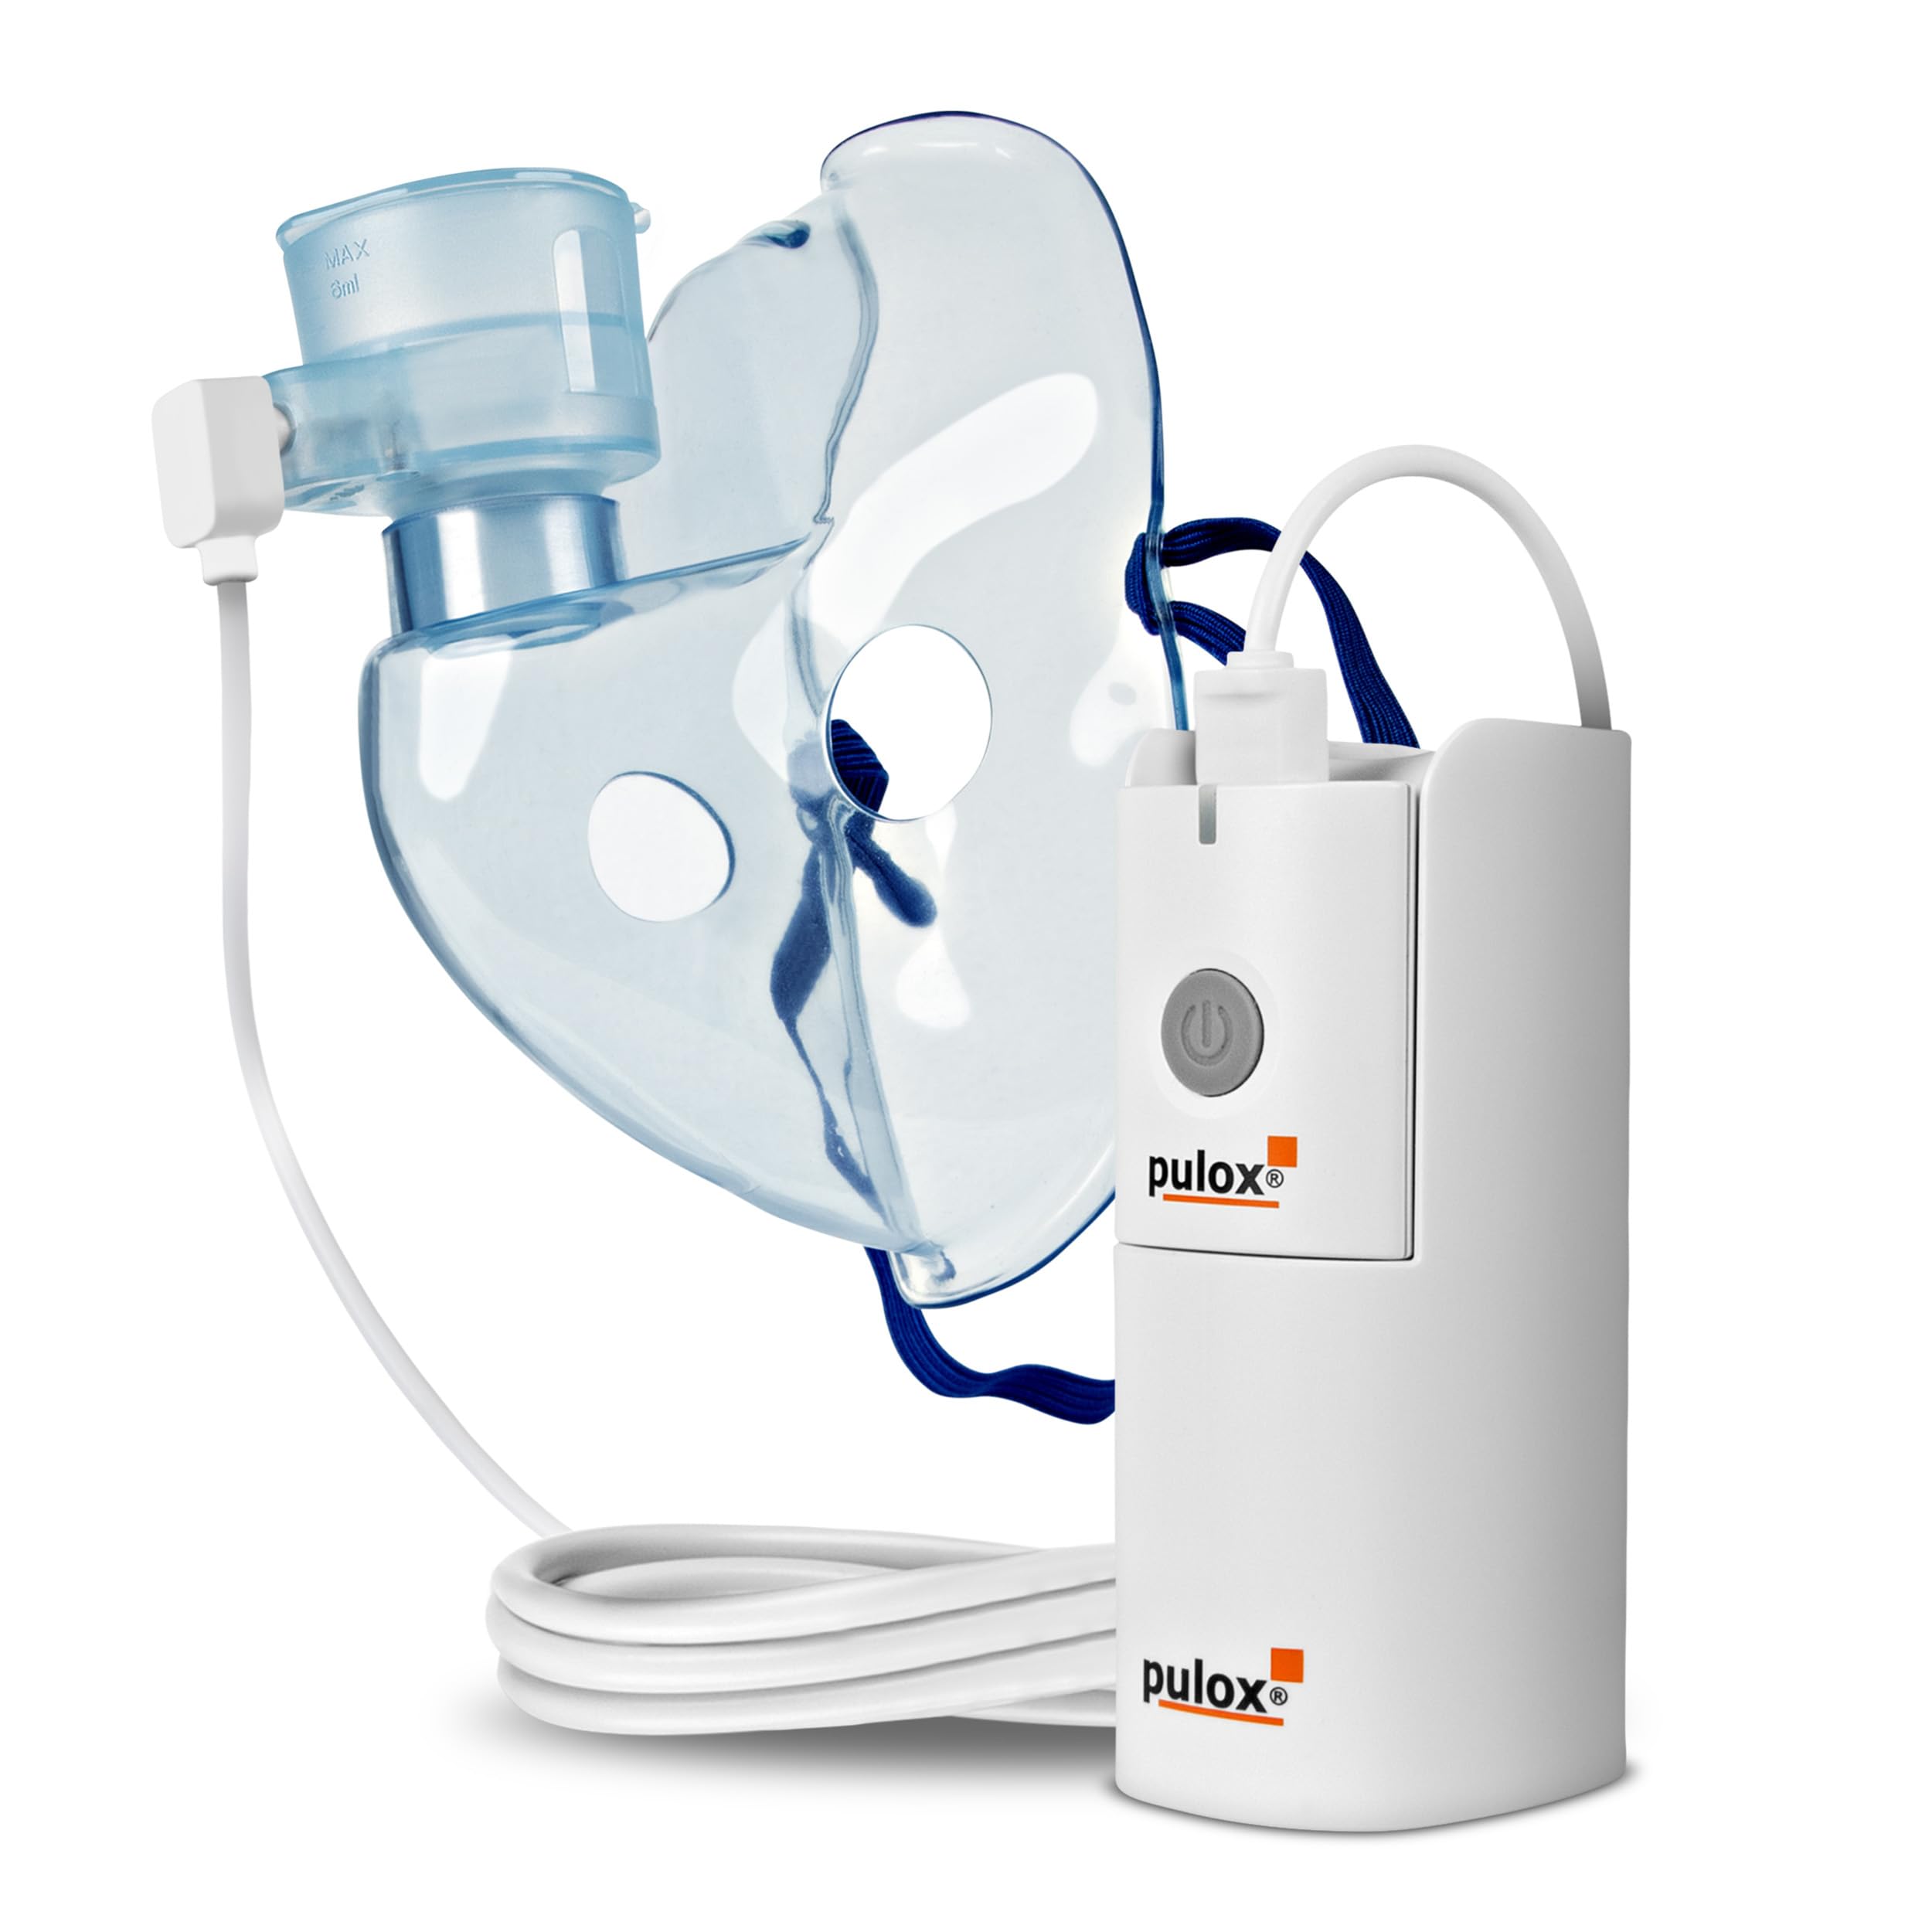 Pulox IN-200 Vapo - Portabler Nebulizer Vernebler Inhalator Zerstäuber Inhalationsgerät mit Maske für Erwachsene und Kinder bei Erkältungen oder Asthma